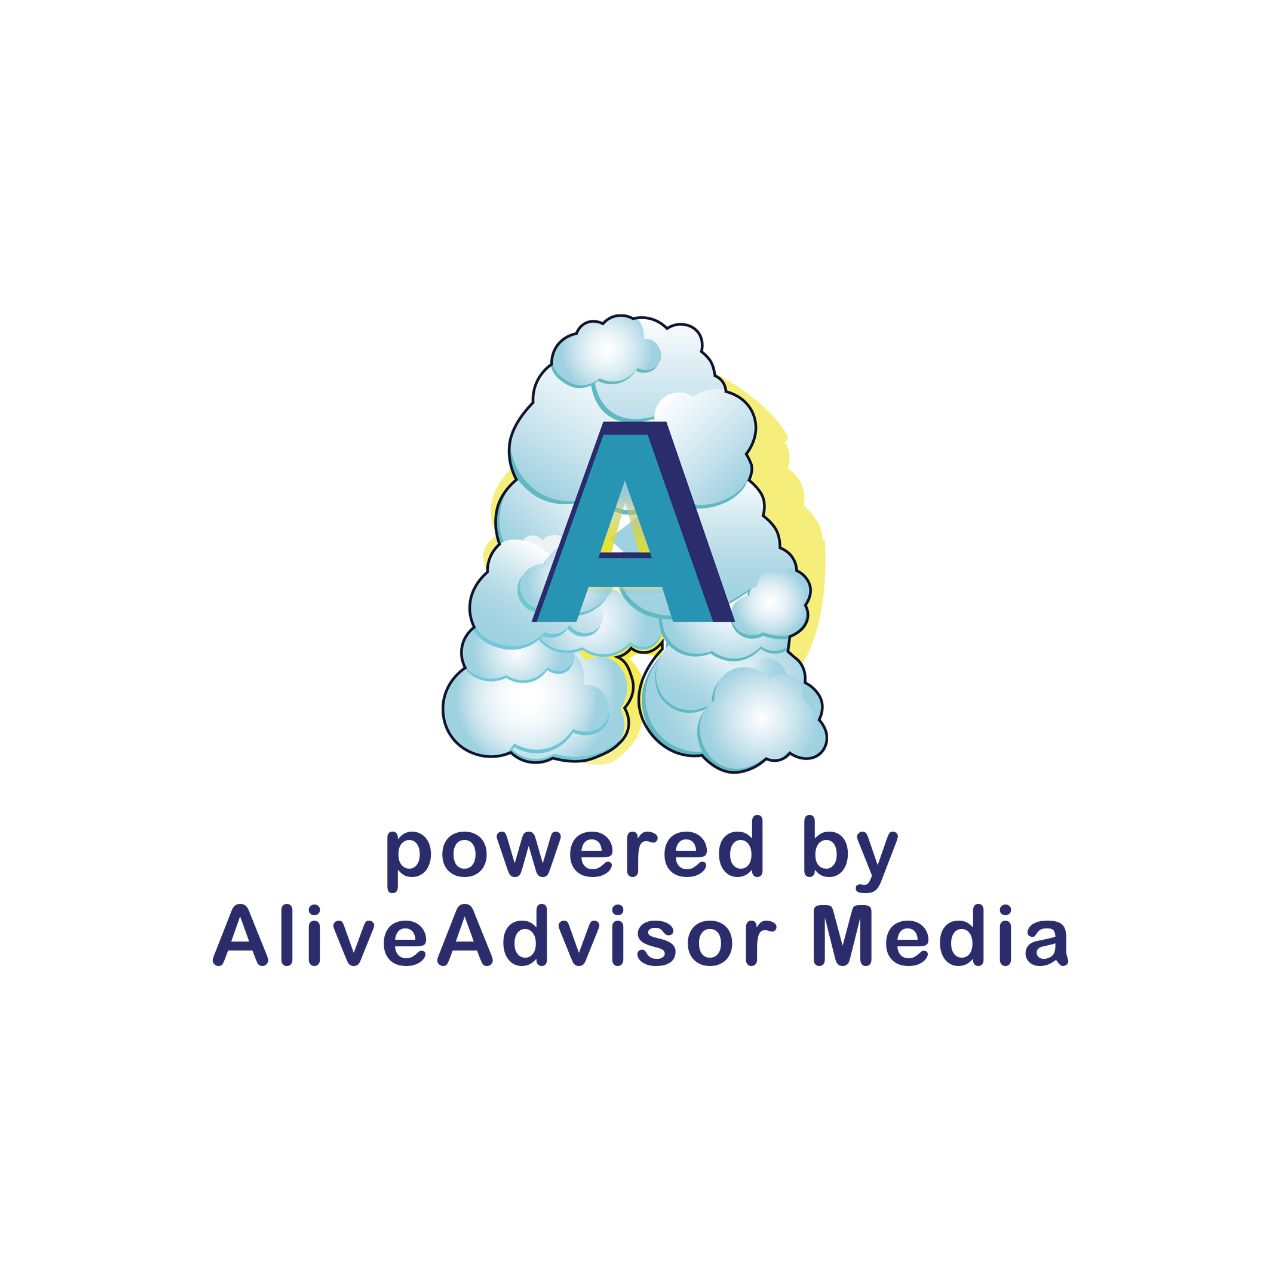 AliveAdvisor Media